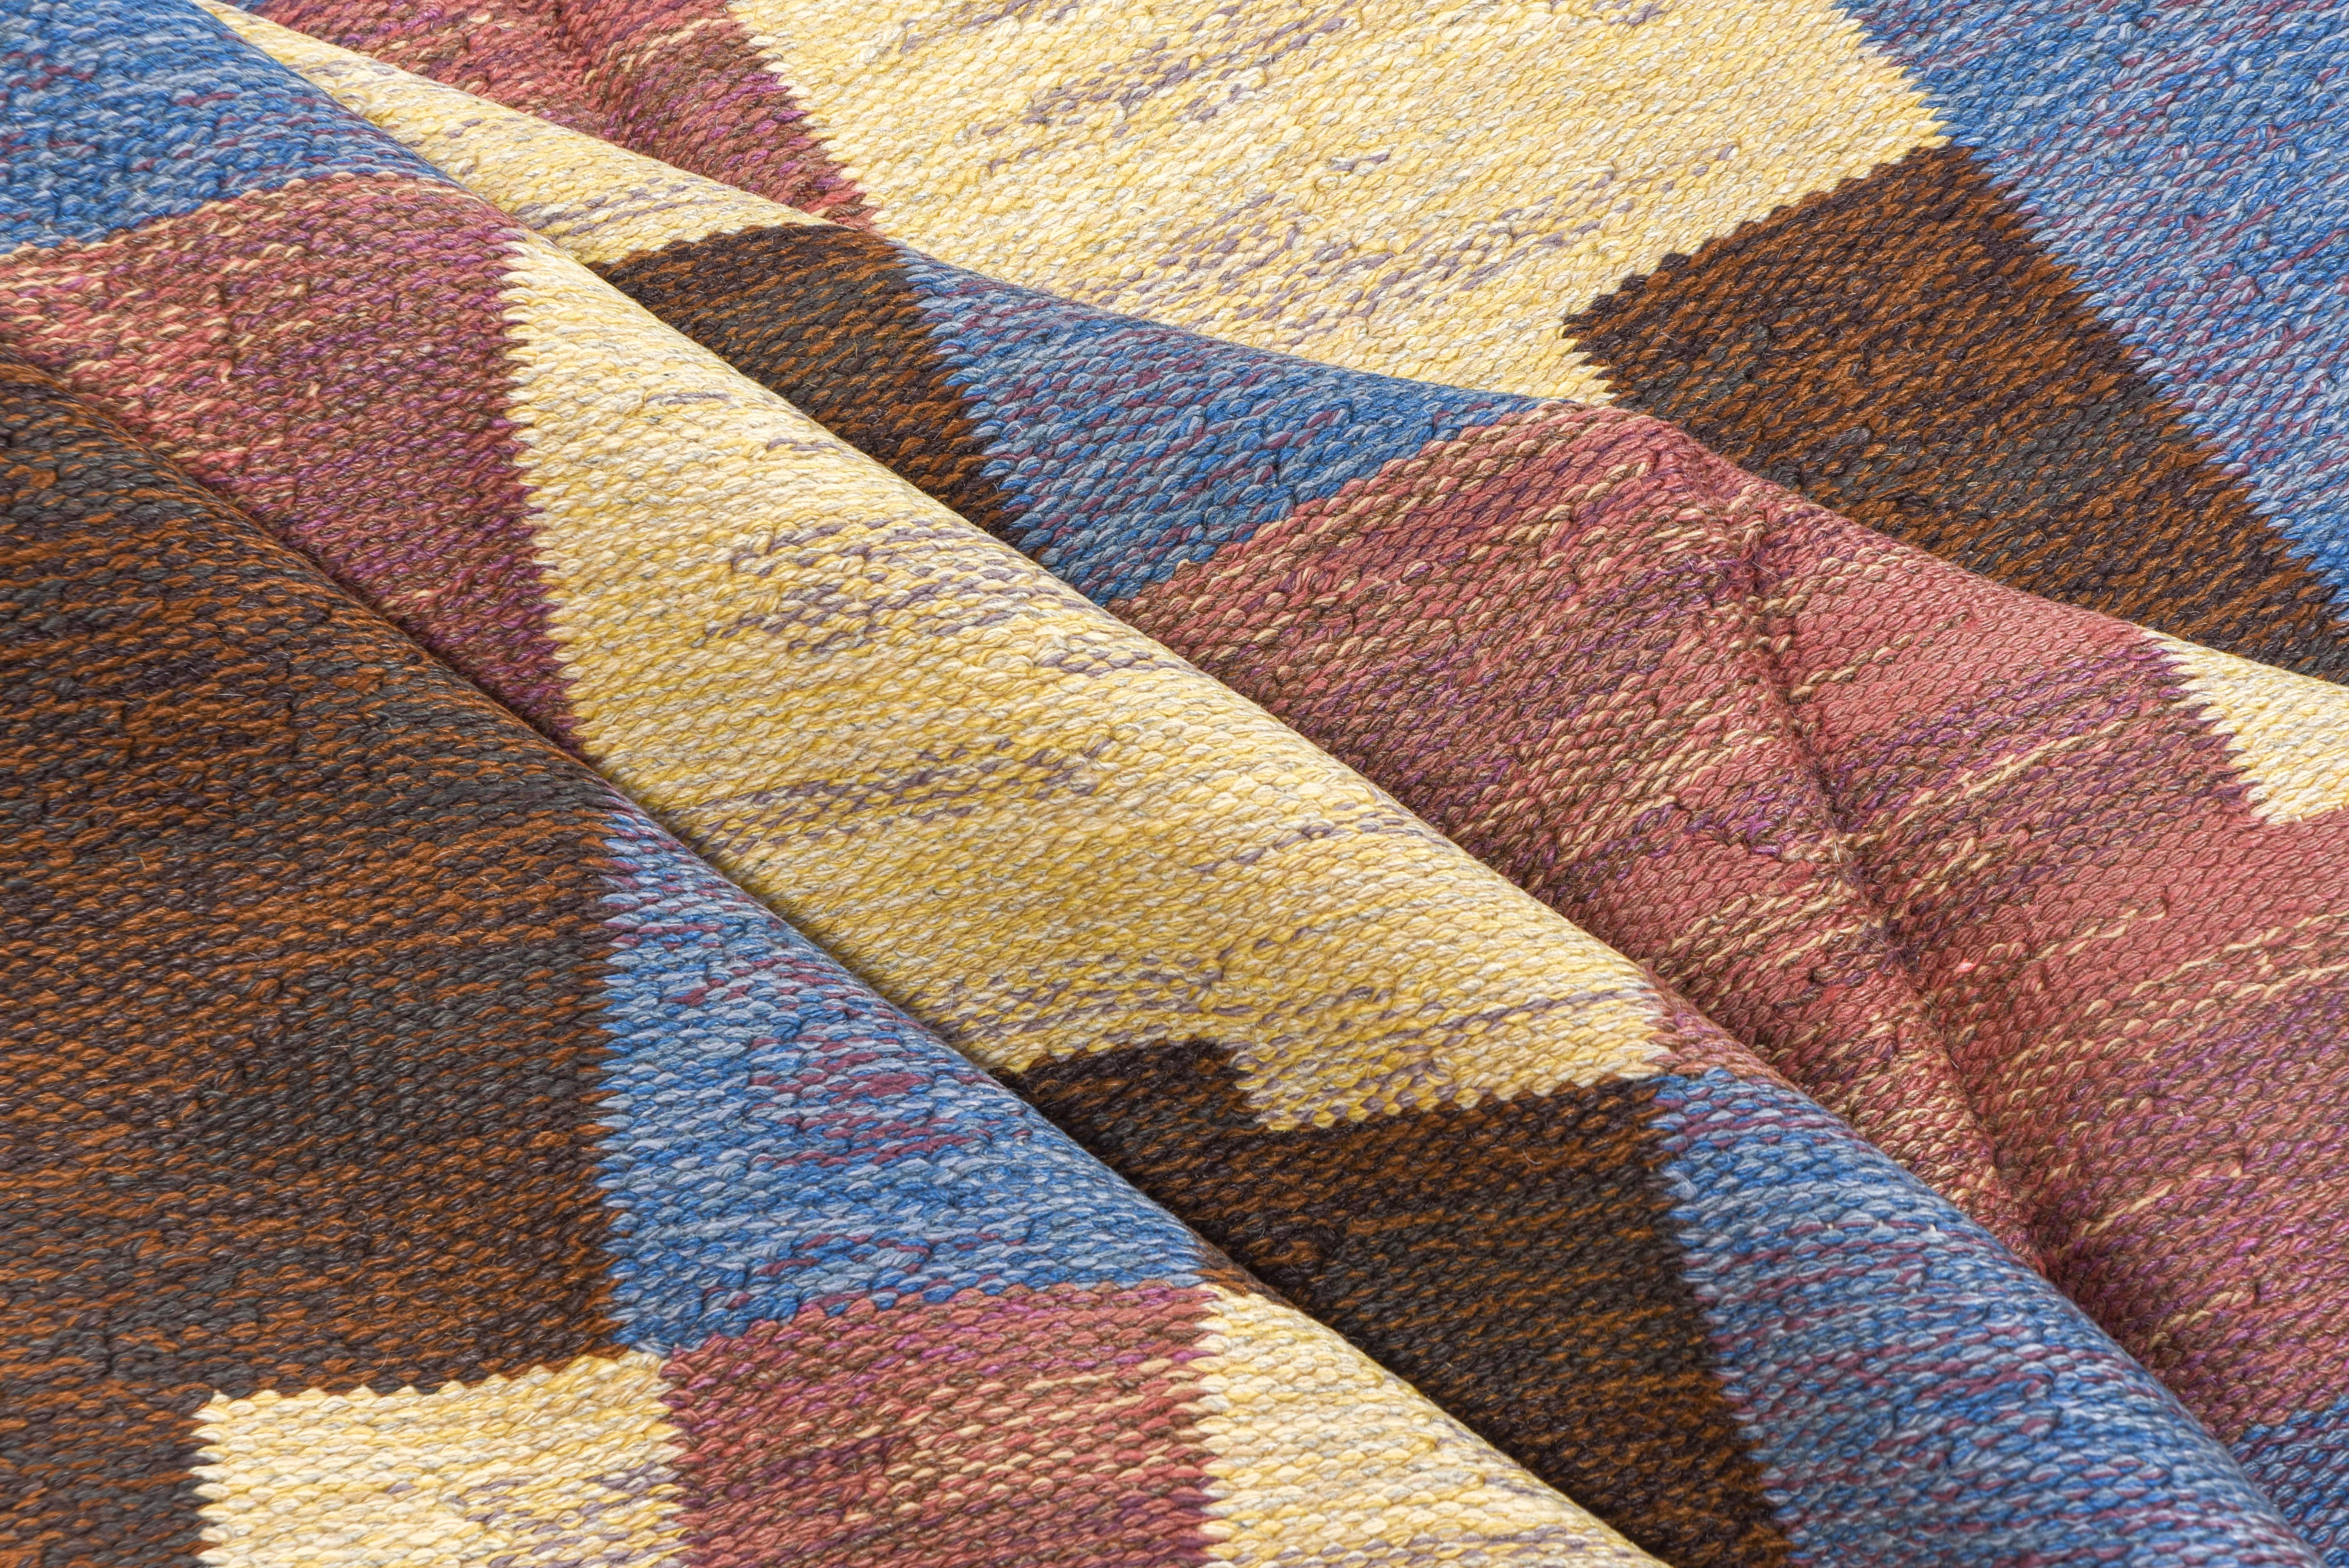 Abstrakter skandinavischer Rollaken-Teppich im Art déco-Stil aus den 1940er Jahren in Blau, Gelb und Brauntönen (Handgeknüpft)